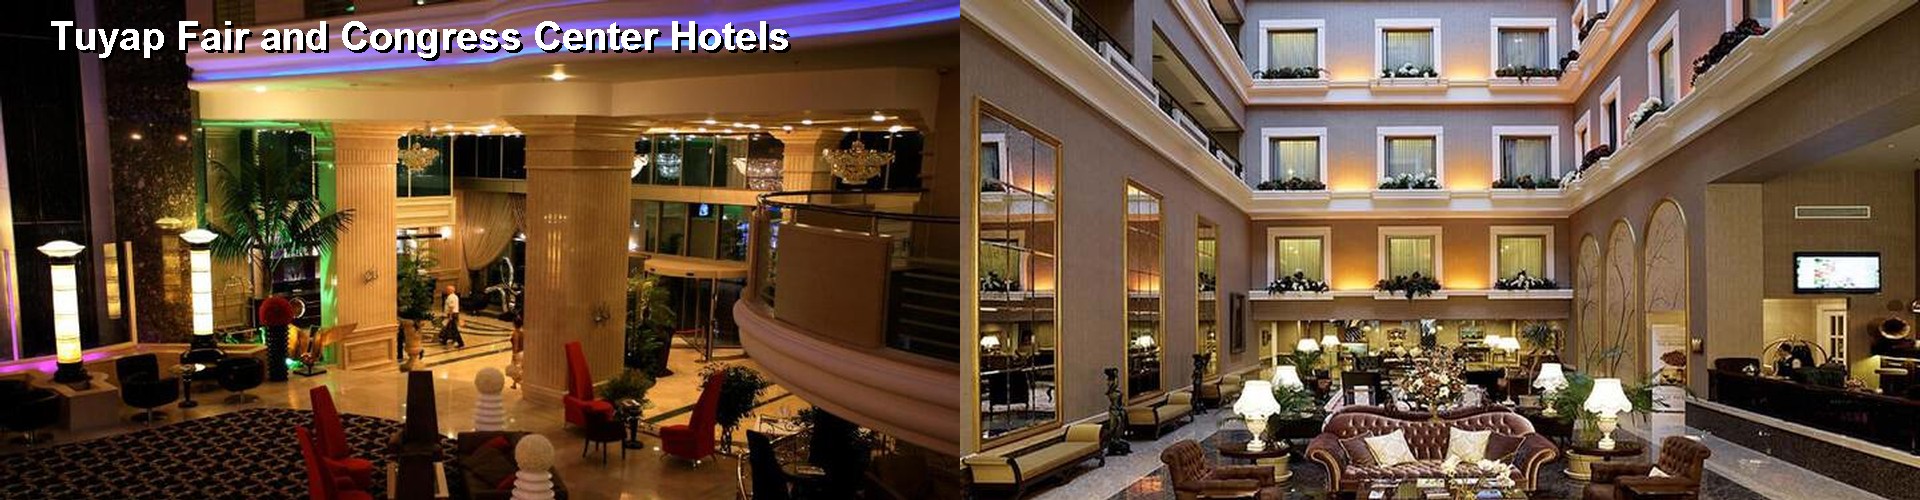 5 Best Hotels near Tuyap Fair and Congress Center